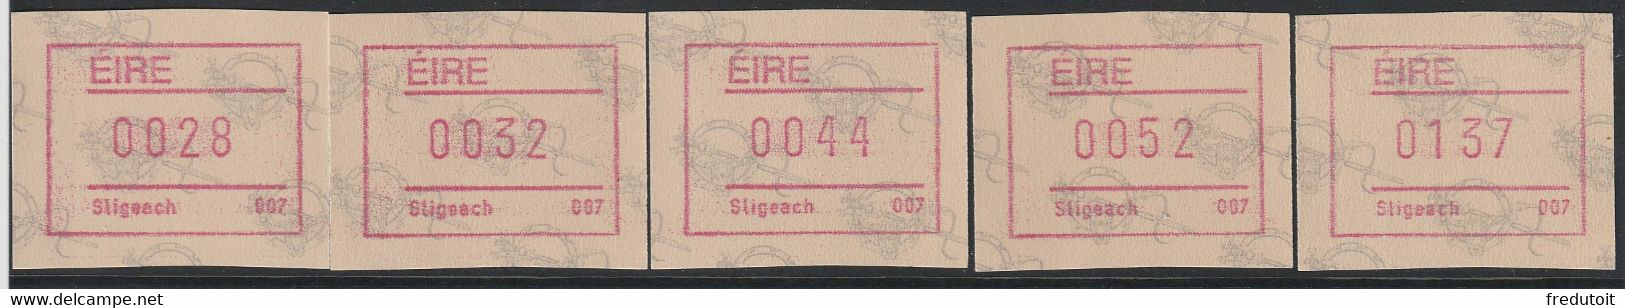 IRLANDE - Timbres Distributeurs / FRAMA  ATM - N°4** (1992) Sligeach 007 - Vignettes D'affranchissement (Frama)